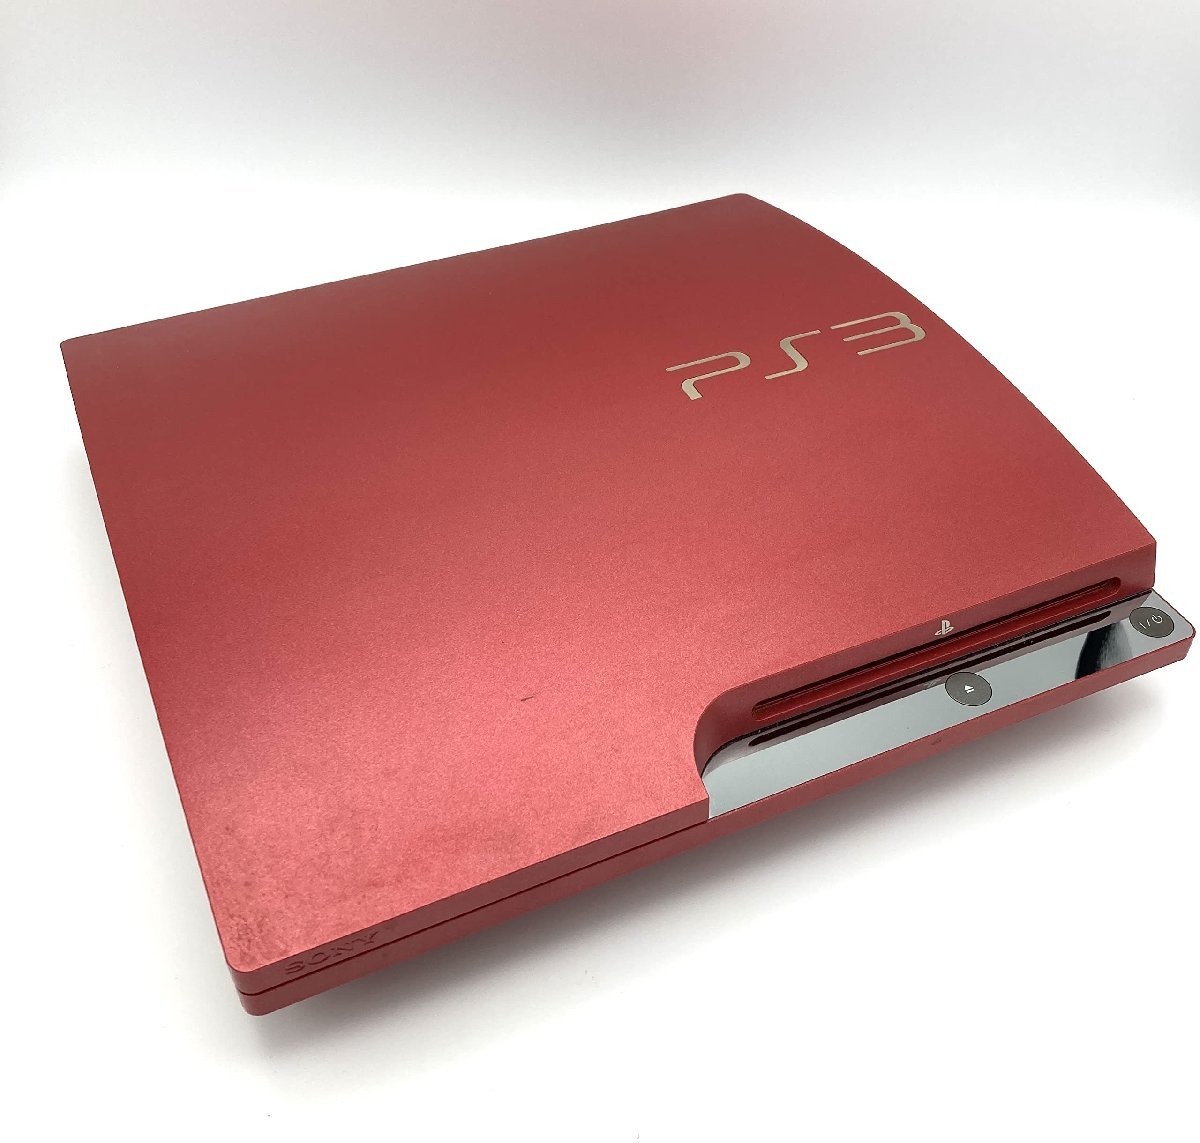 PlayStation 3 (320GB) スカーレット・レッド (CECH-3000BSR)_画像2